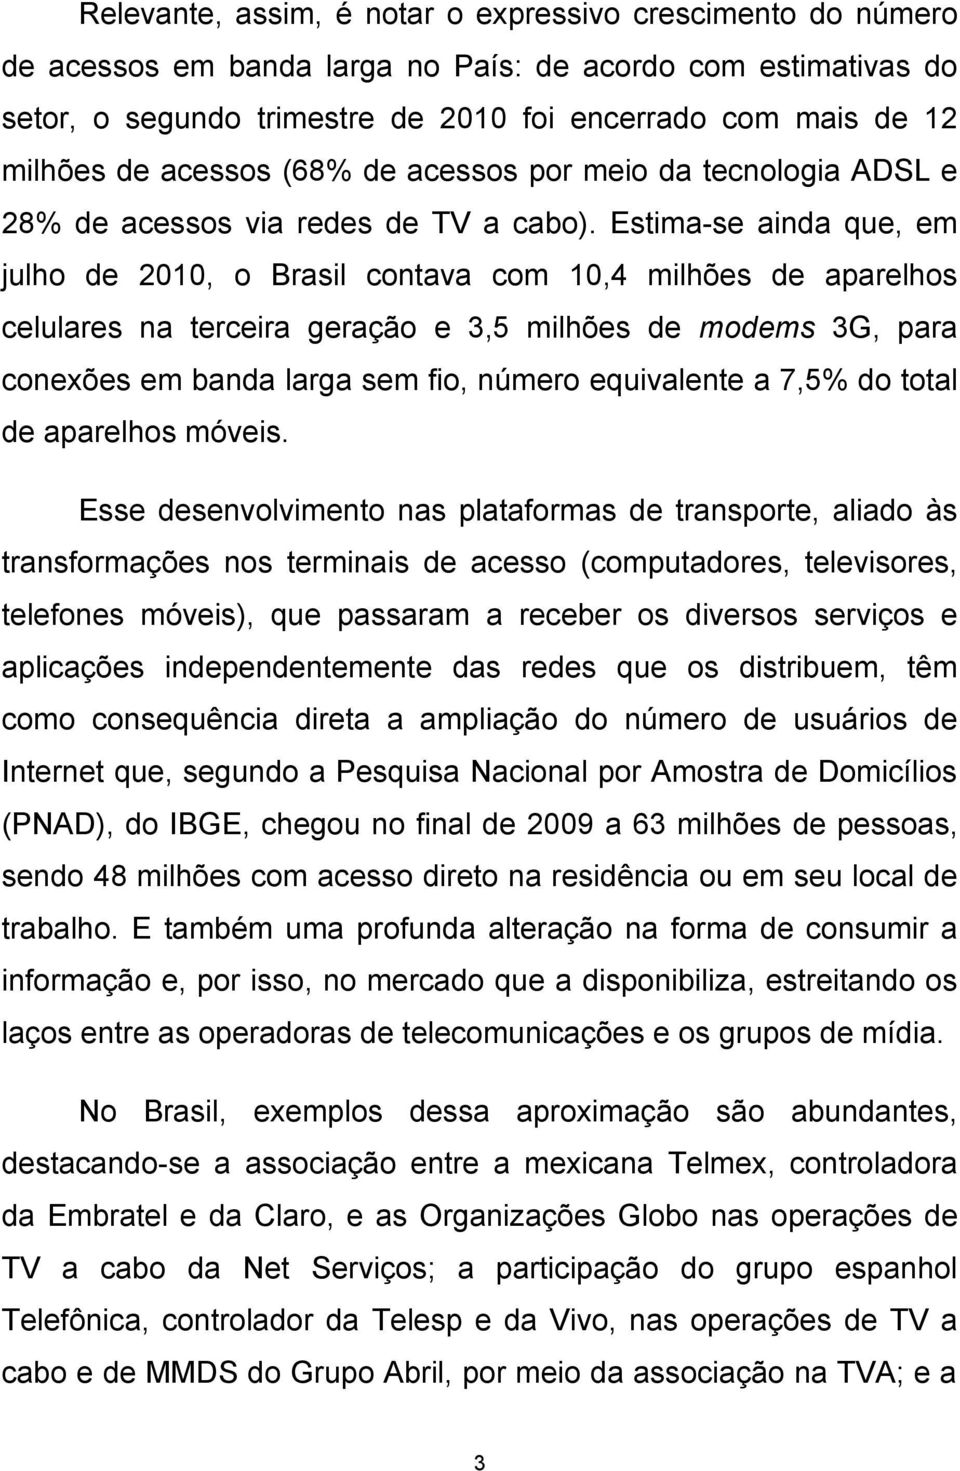 Estima-se ainda que, em julho de 2010, o Brasil contava com 10,4 milhões de aparelhos celulares na terceira geração e 3,5 milhões de modems 3G, para conexões em banda larga sem fio, número